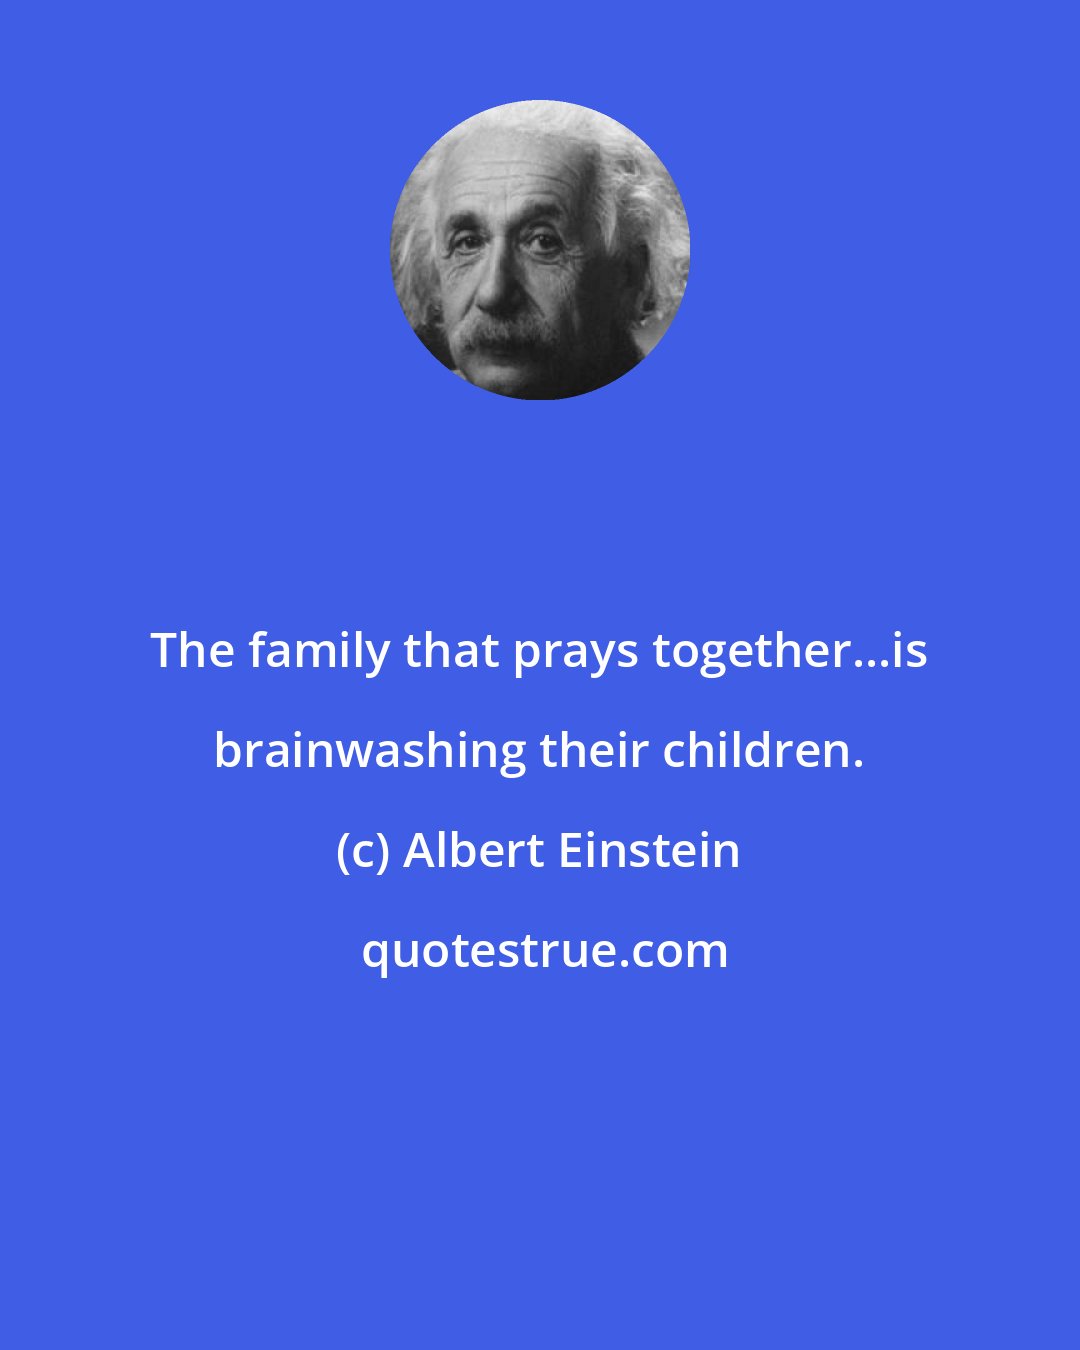 Albert Einstein: The family that prays together...is brainwashing their children.